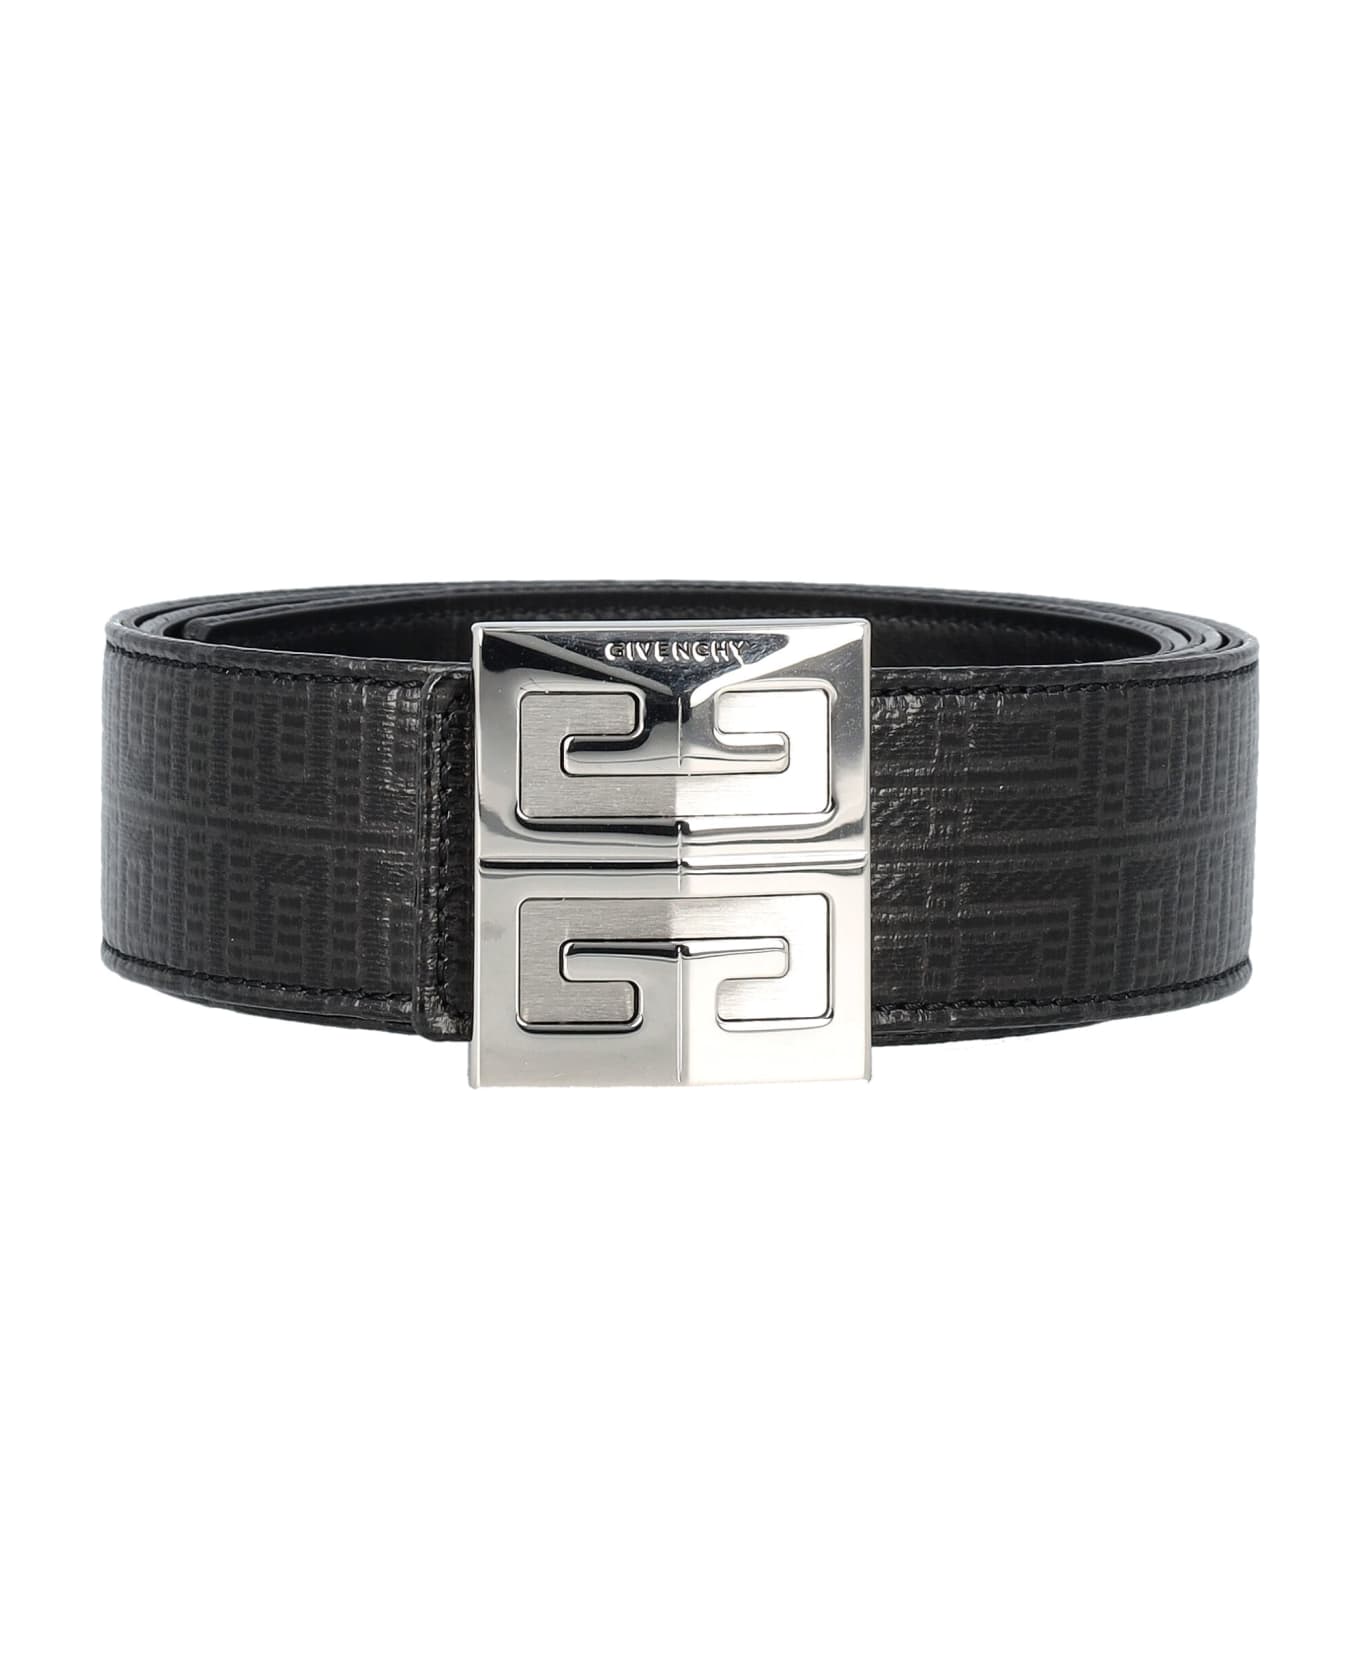 Givenchy 4g Reversible Belt 40mm - BLACK